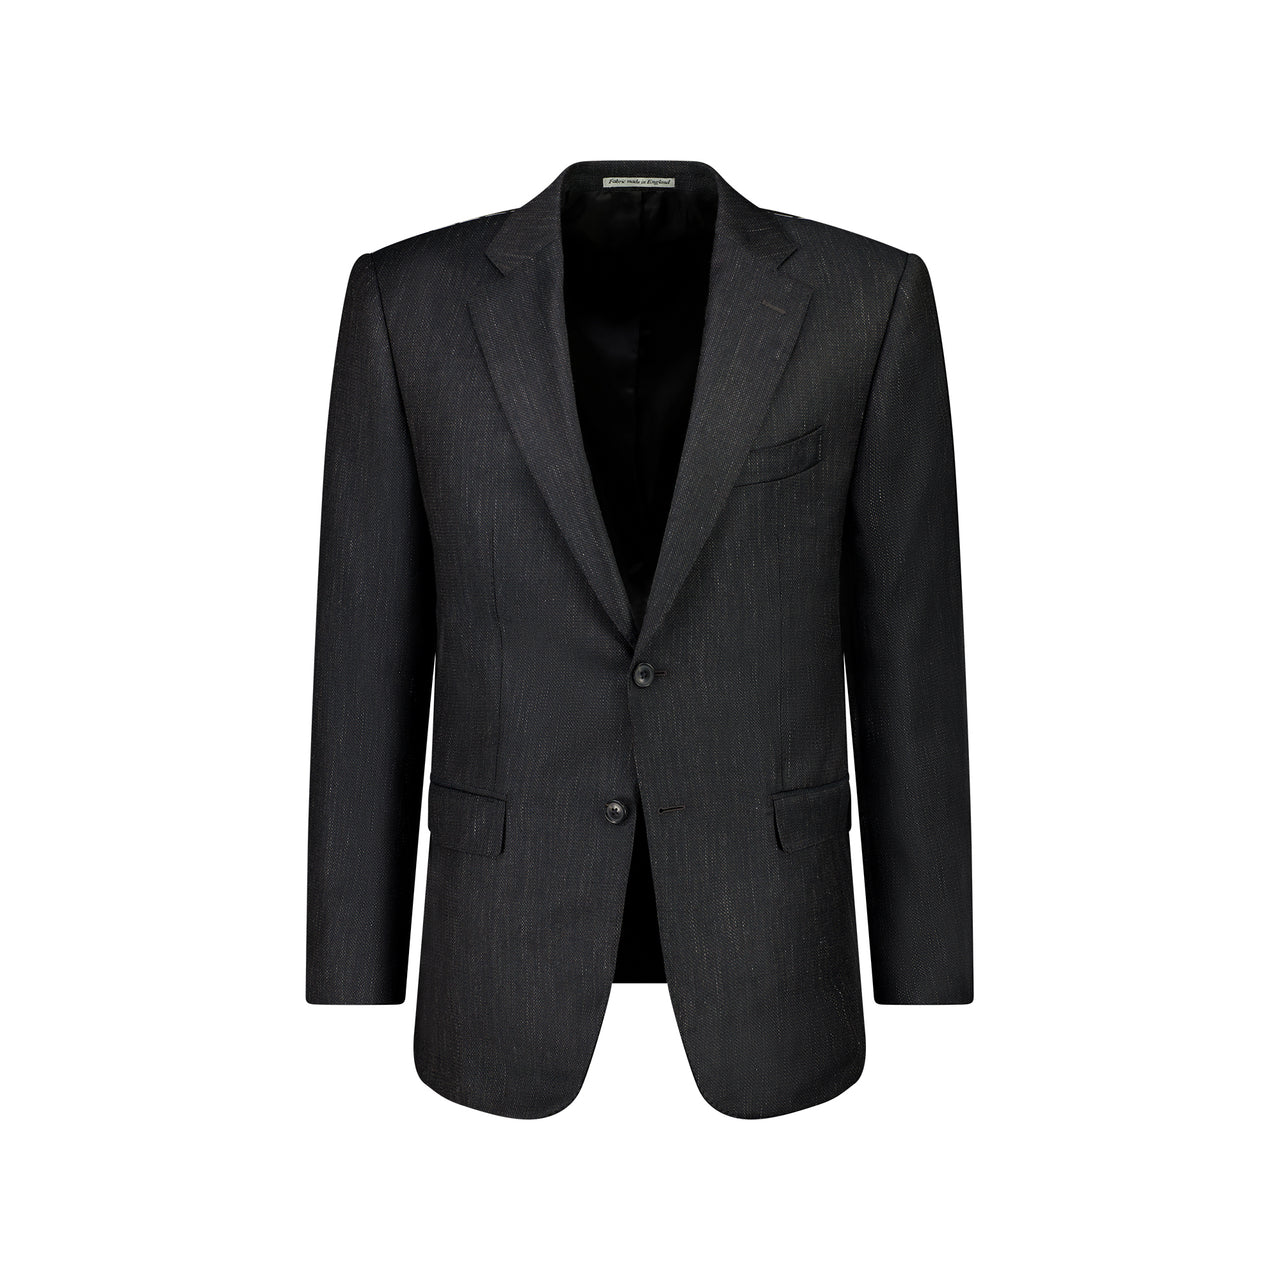 HENRY SARTORIAL DORMEUIL Wool/Silk/Linen Jacket CHARCOAL REG